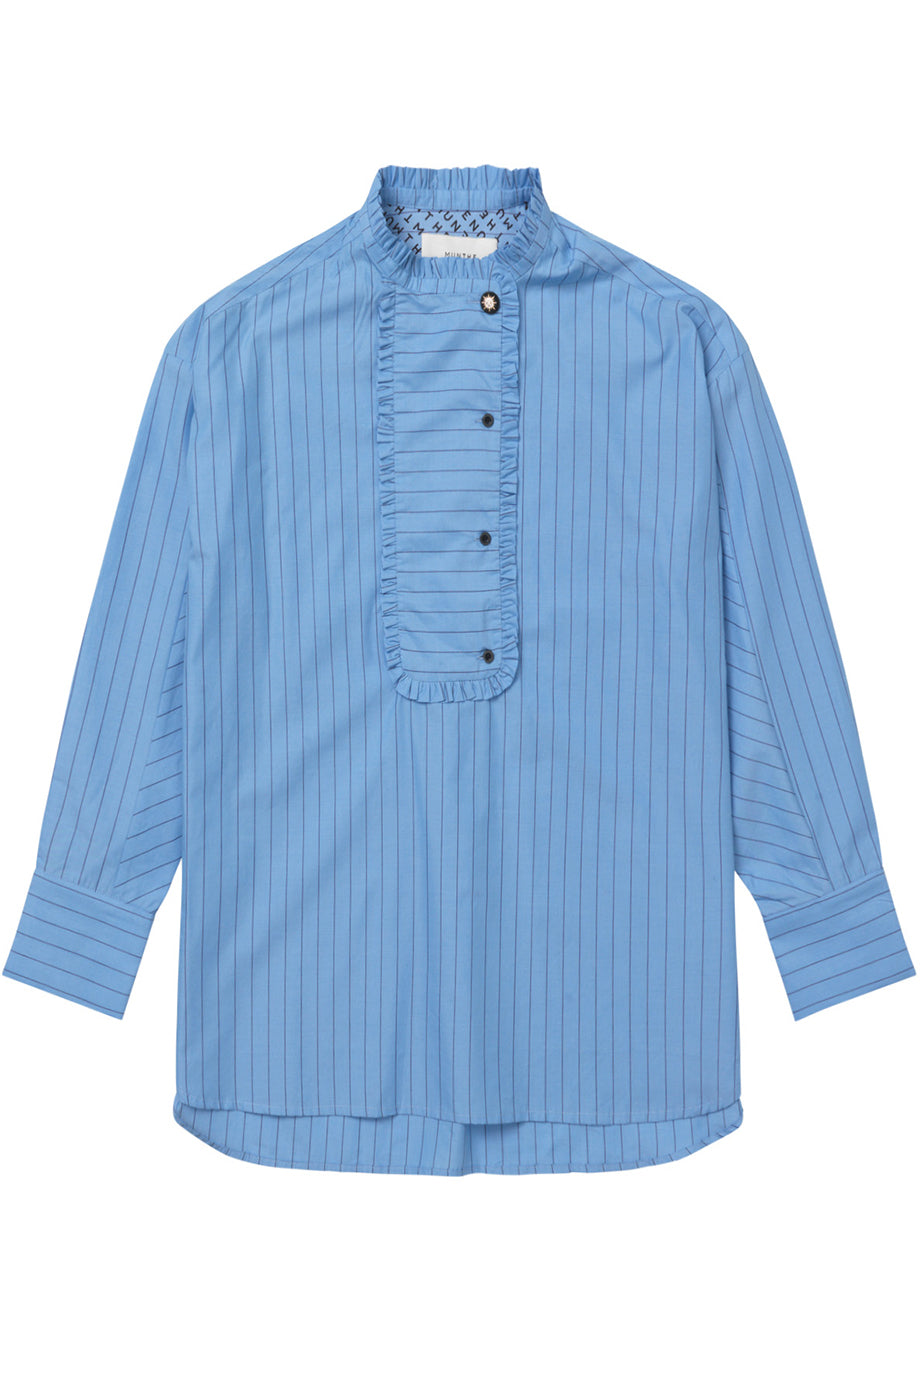 Munthe Cary Shirt - Blue